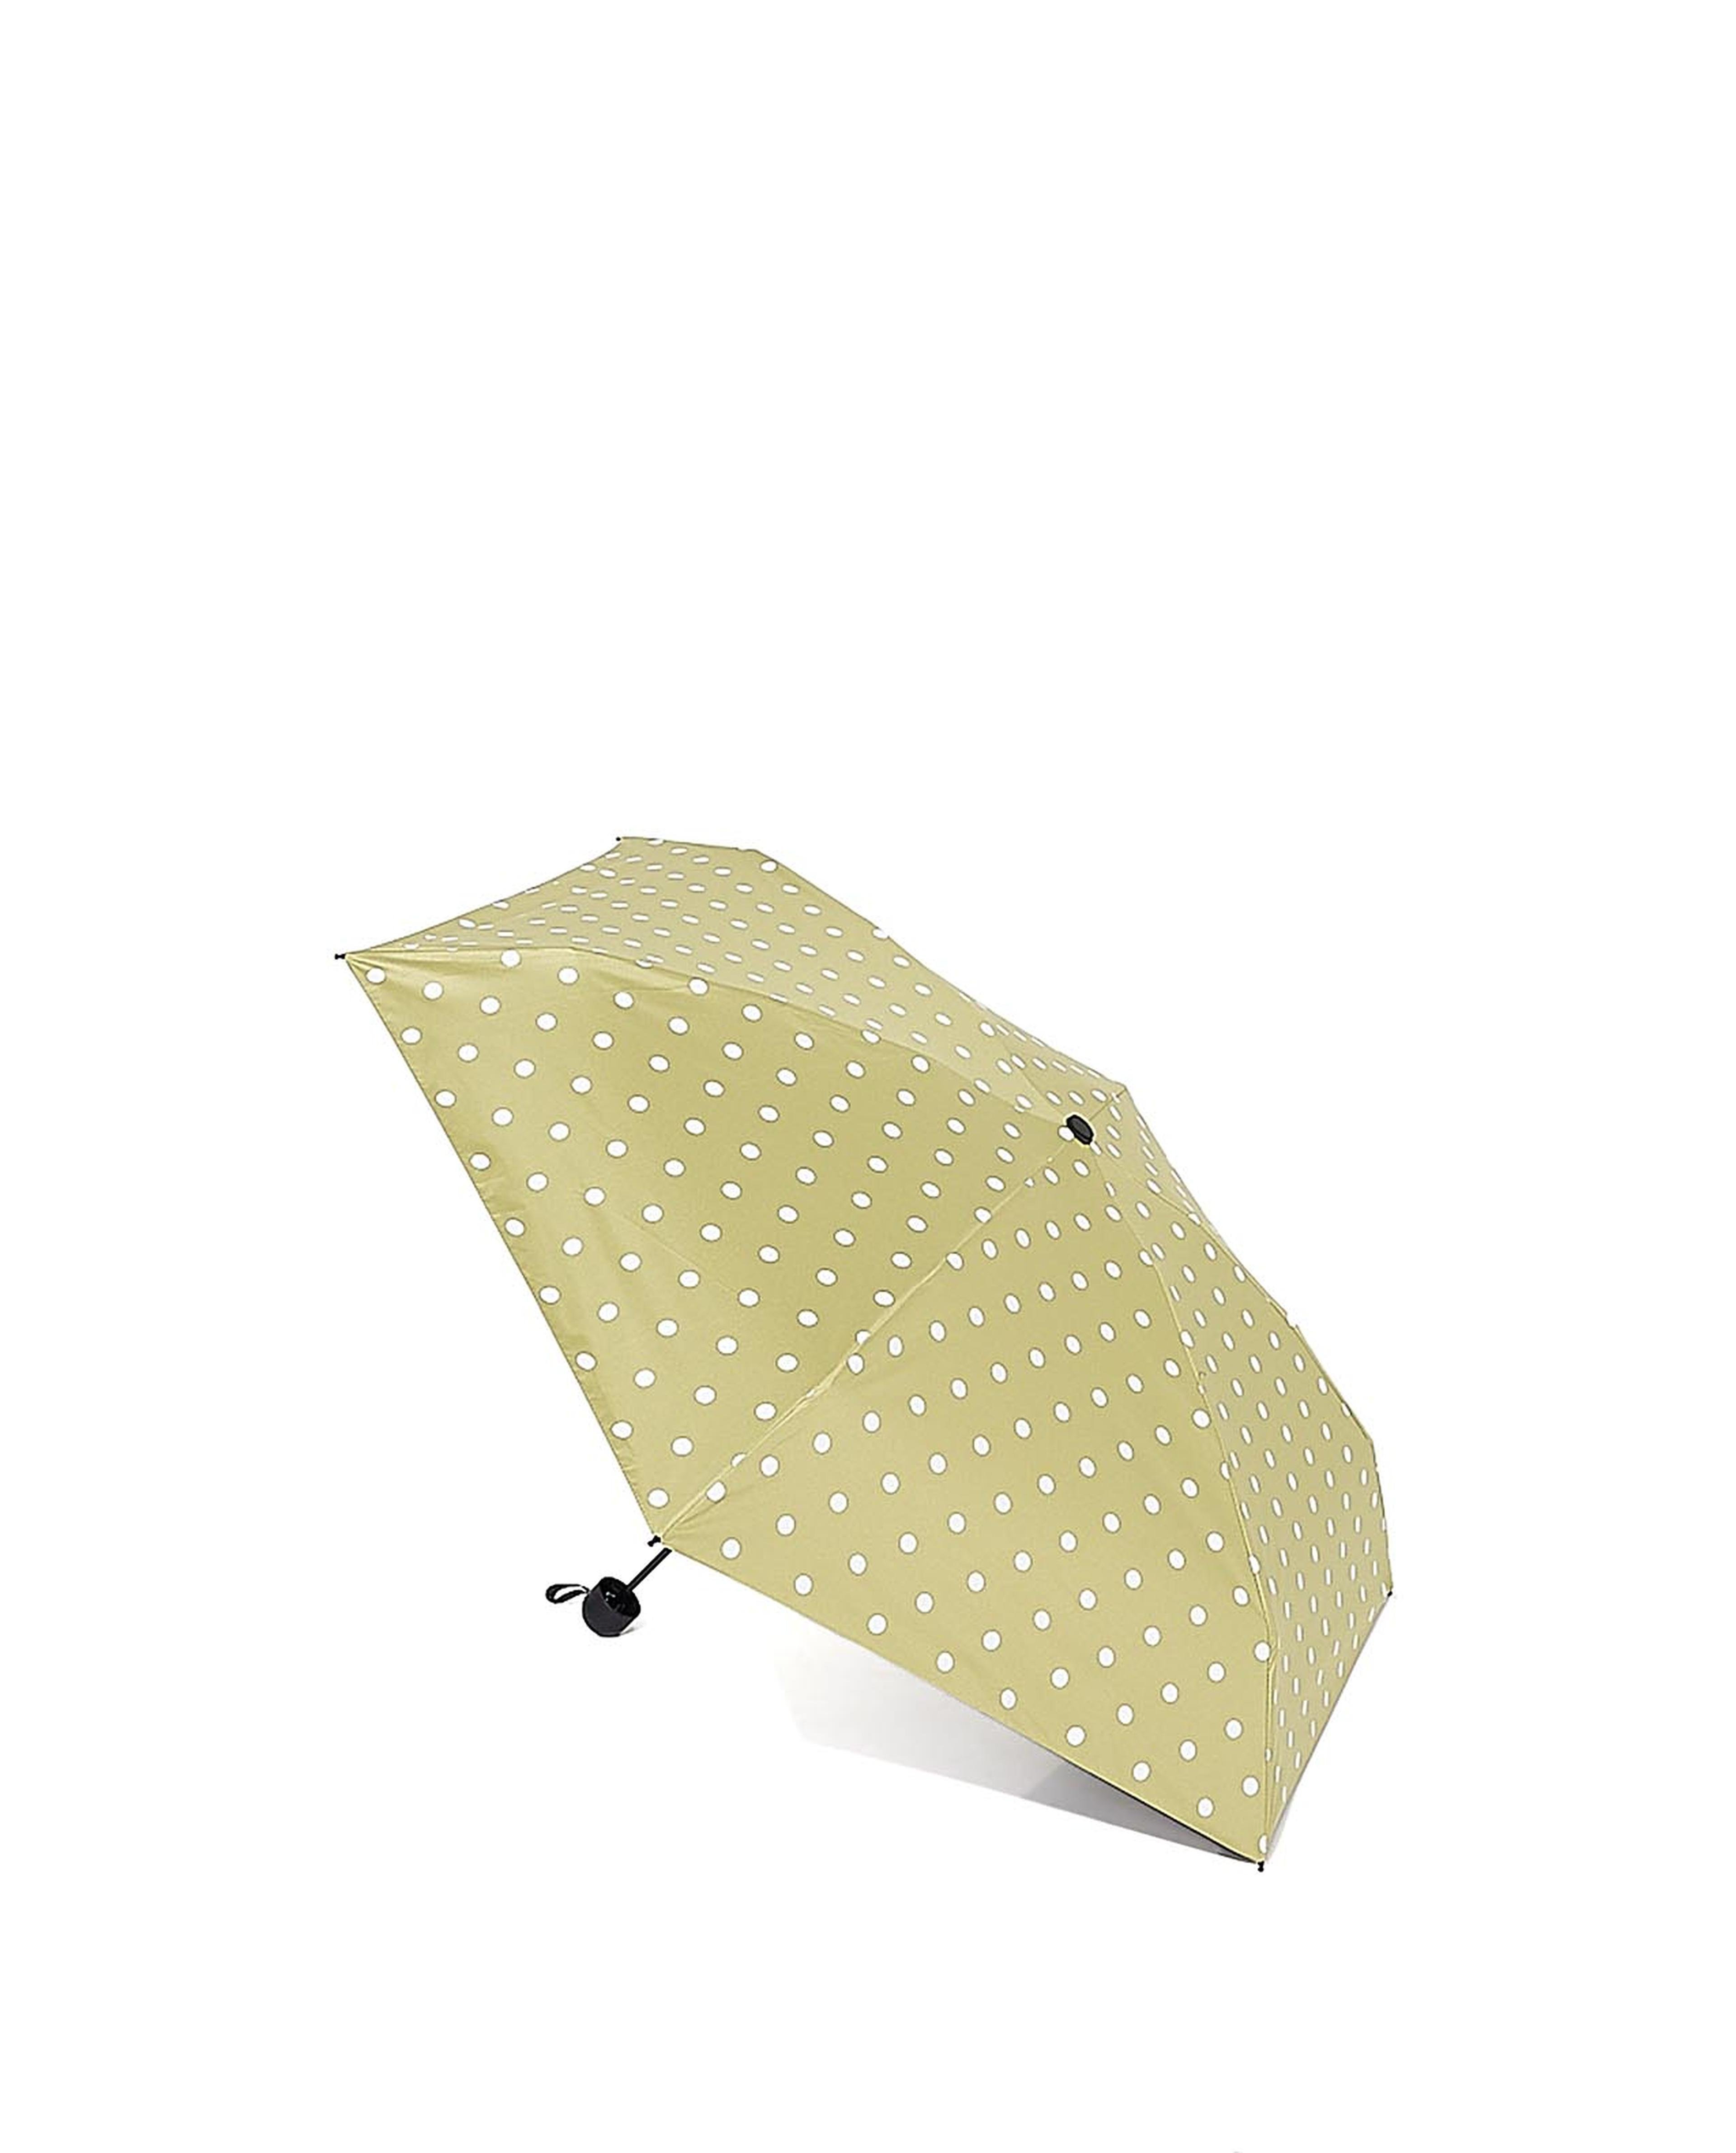 Polka Dot Printed Umbrella